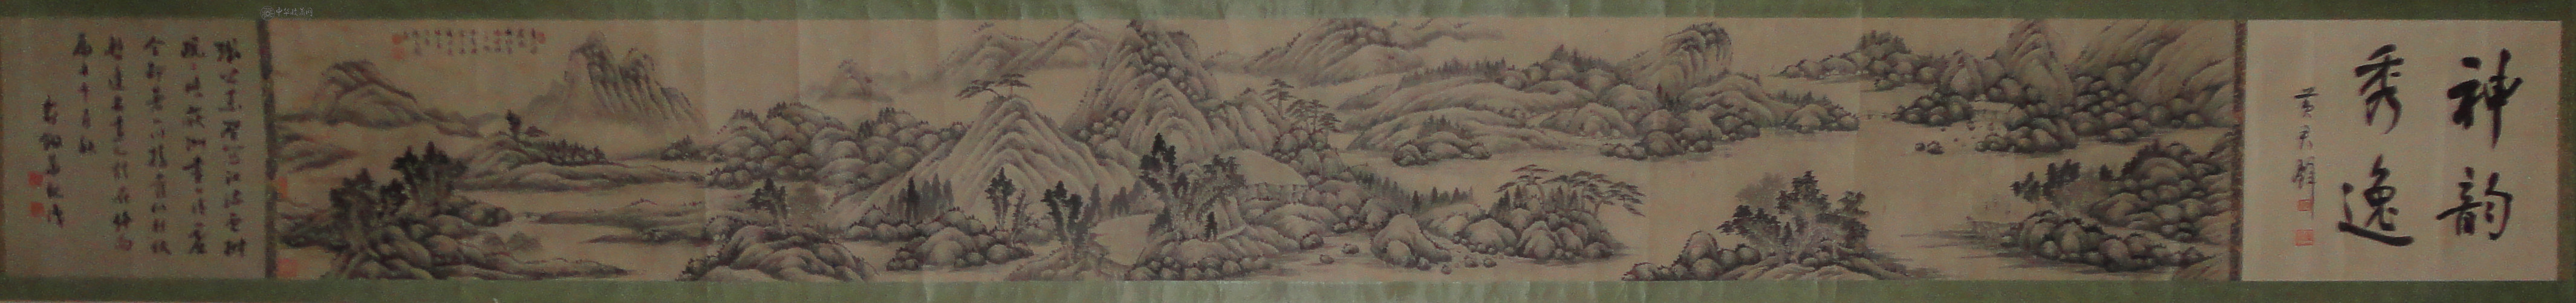 张石园-山水-卷画心322x37cm--黄君璧-题引首--俞剑华-题跋-全长5米多